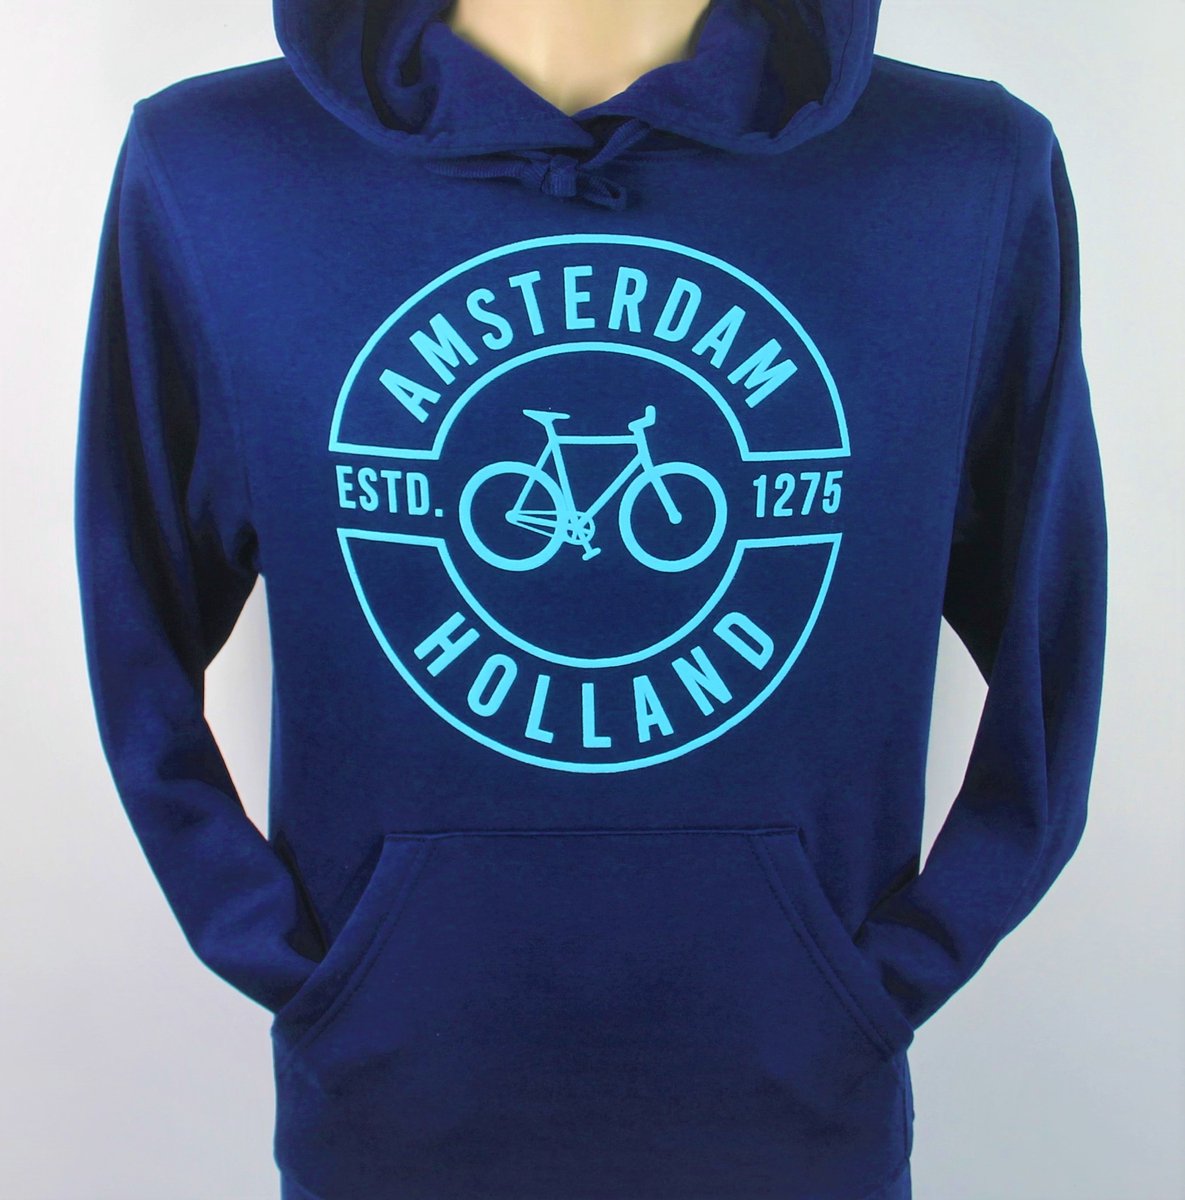 Hooded Sweater - Met Trekkoord - Capuchon - Chill - Trui - Vest - met capuchon - Outdoor - Fiets - Discover - 1275 -Amsterdam - Bike Town - Travel - Blauwe Fiets - Navy - Maat XS